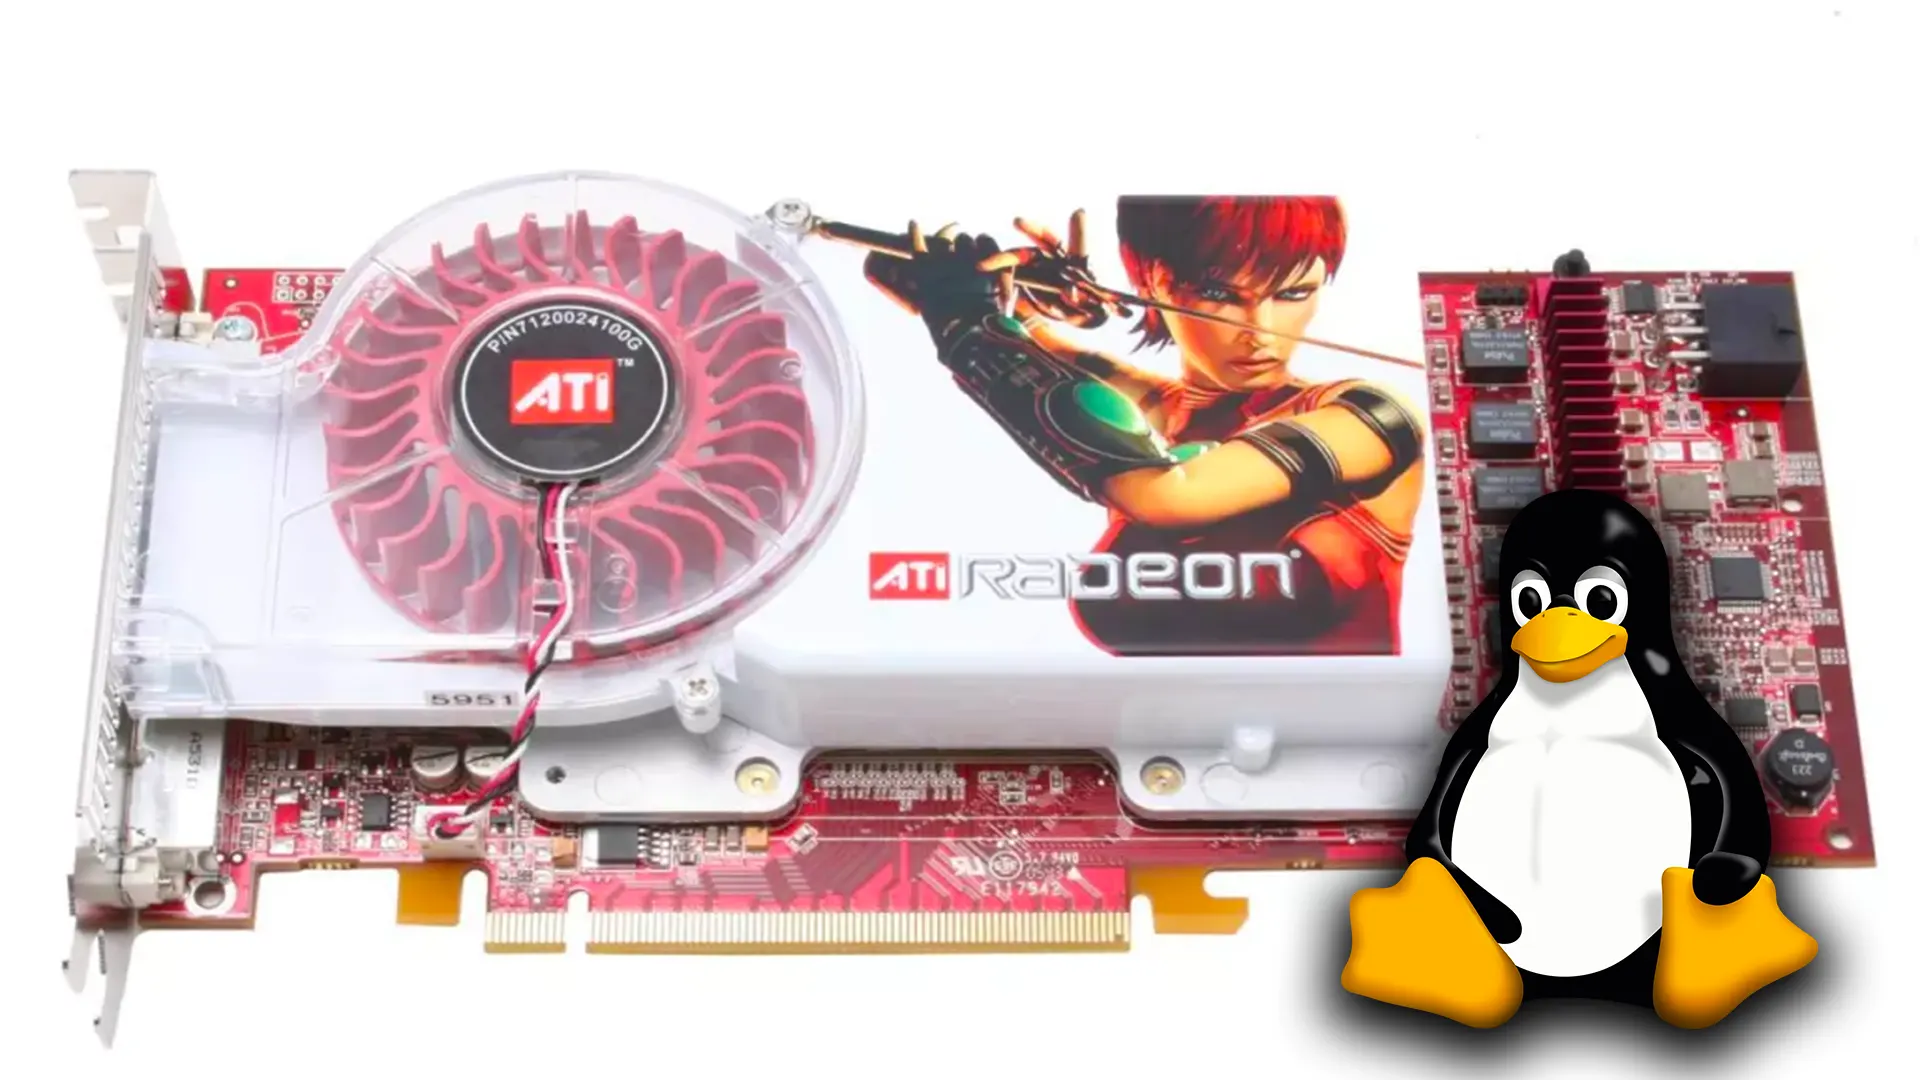 Algumas placas Radeon da antiga ATI, estão recebendo novos drivers para uso no Linux. Estas placas possuem 20 anos de vida!